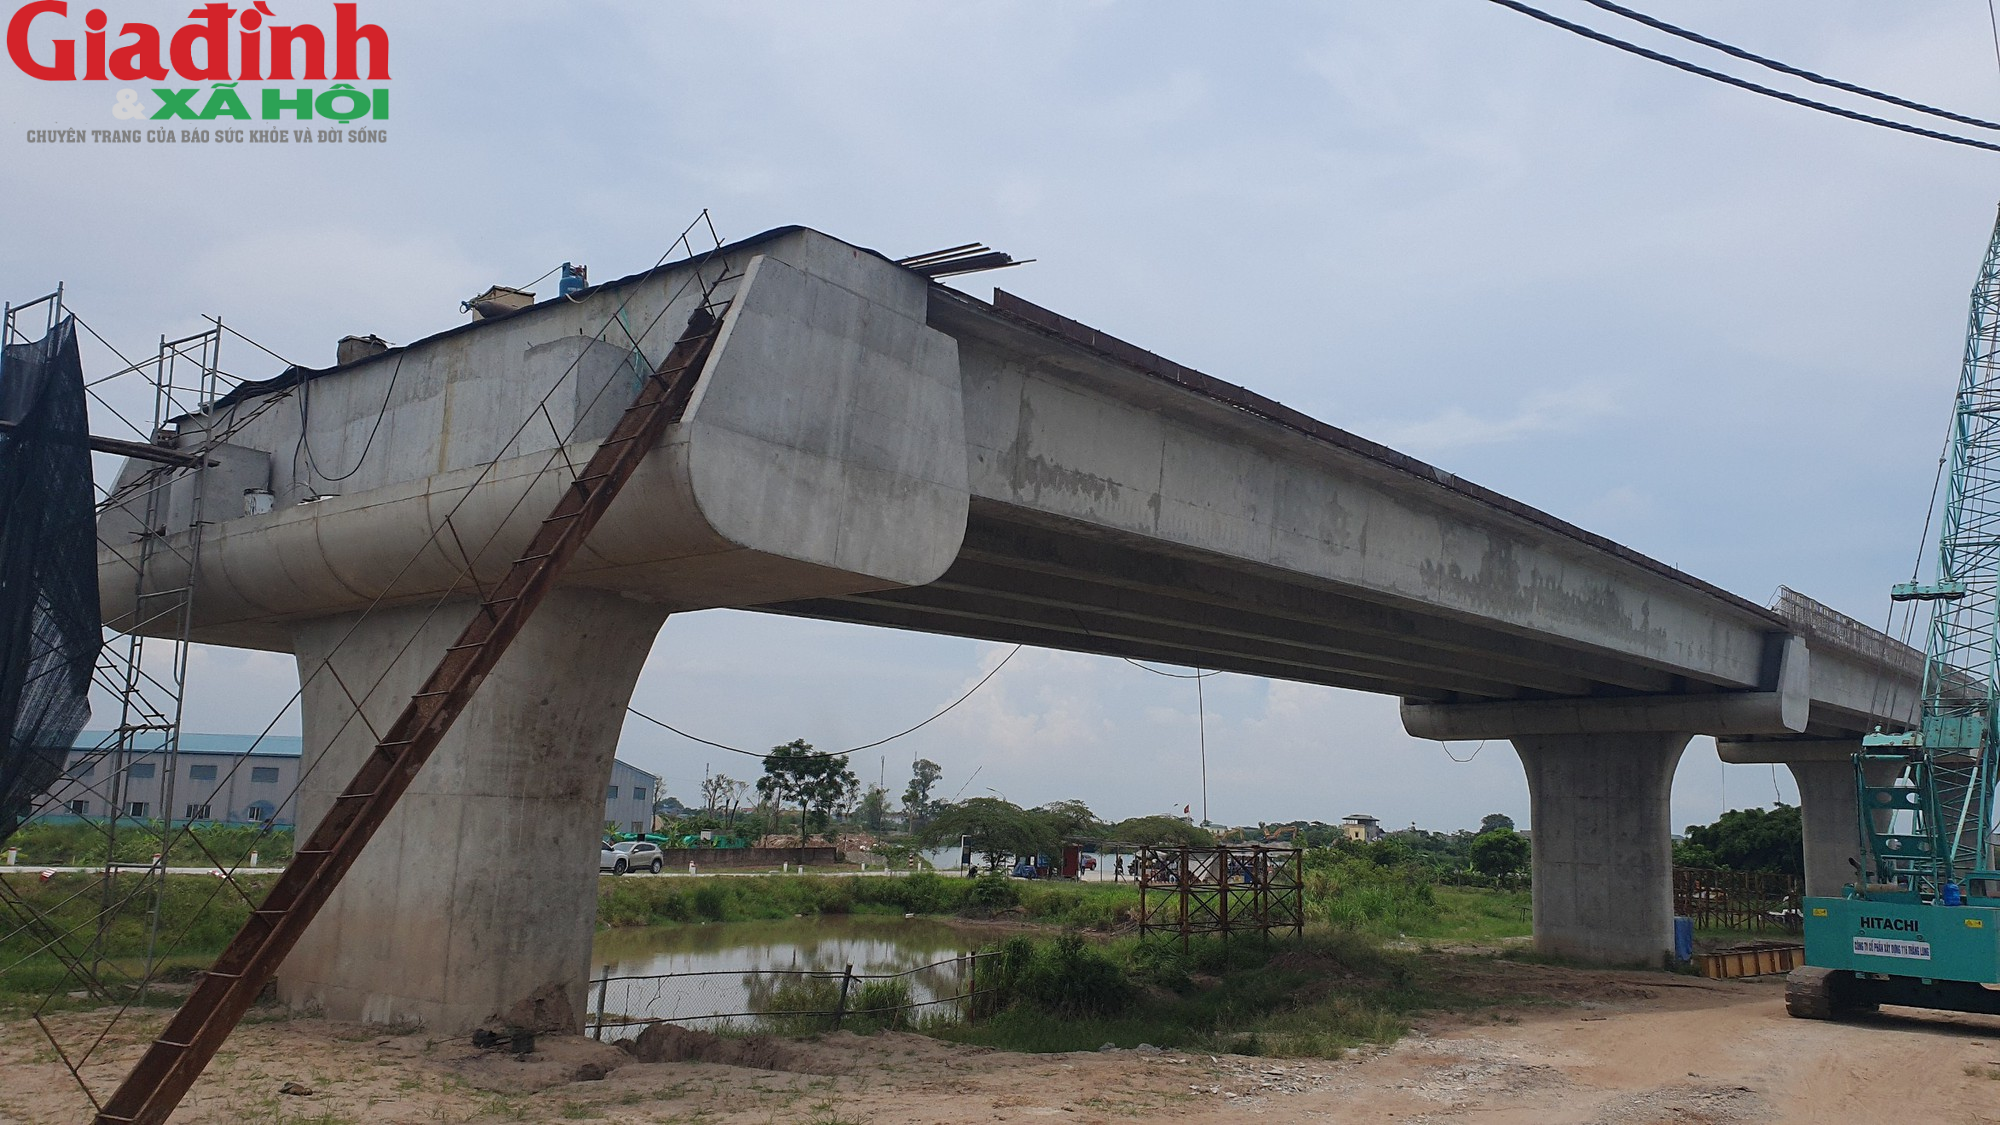 Sẽ không còn cảnh chờ phà khi Cầu Đồng Cao nối hai bở sông Đào hoàn thành - Ảnh 15.